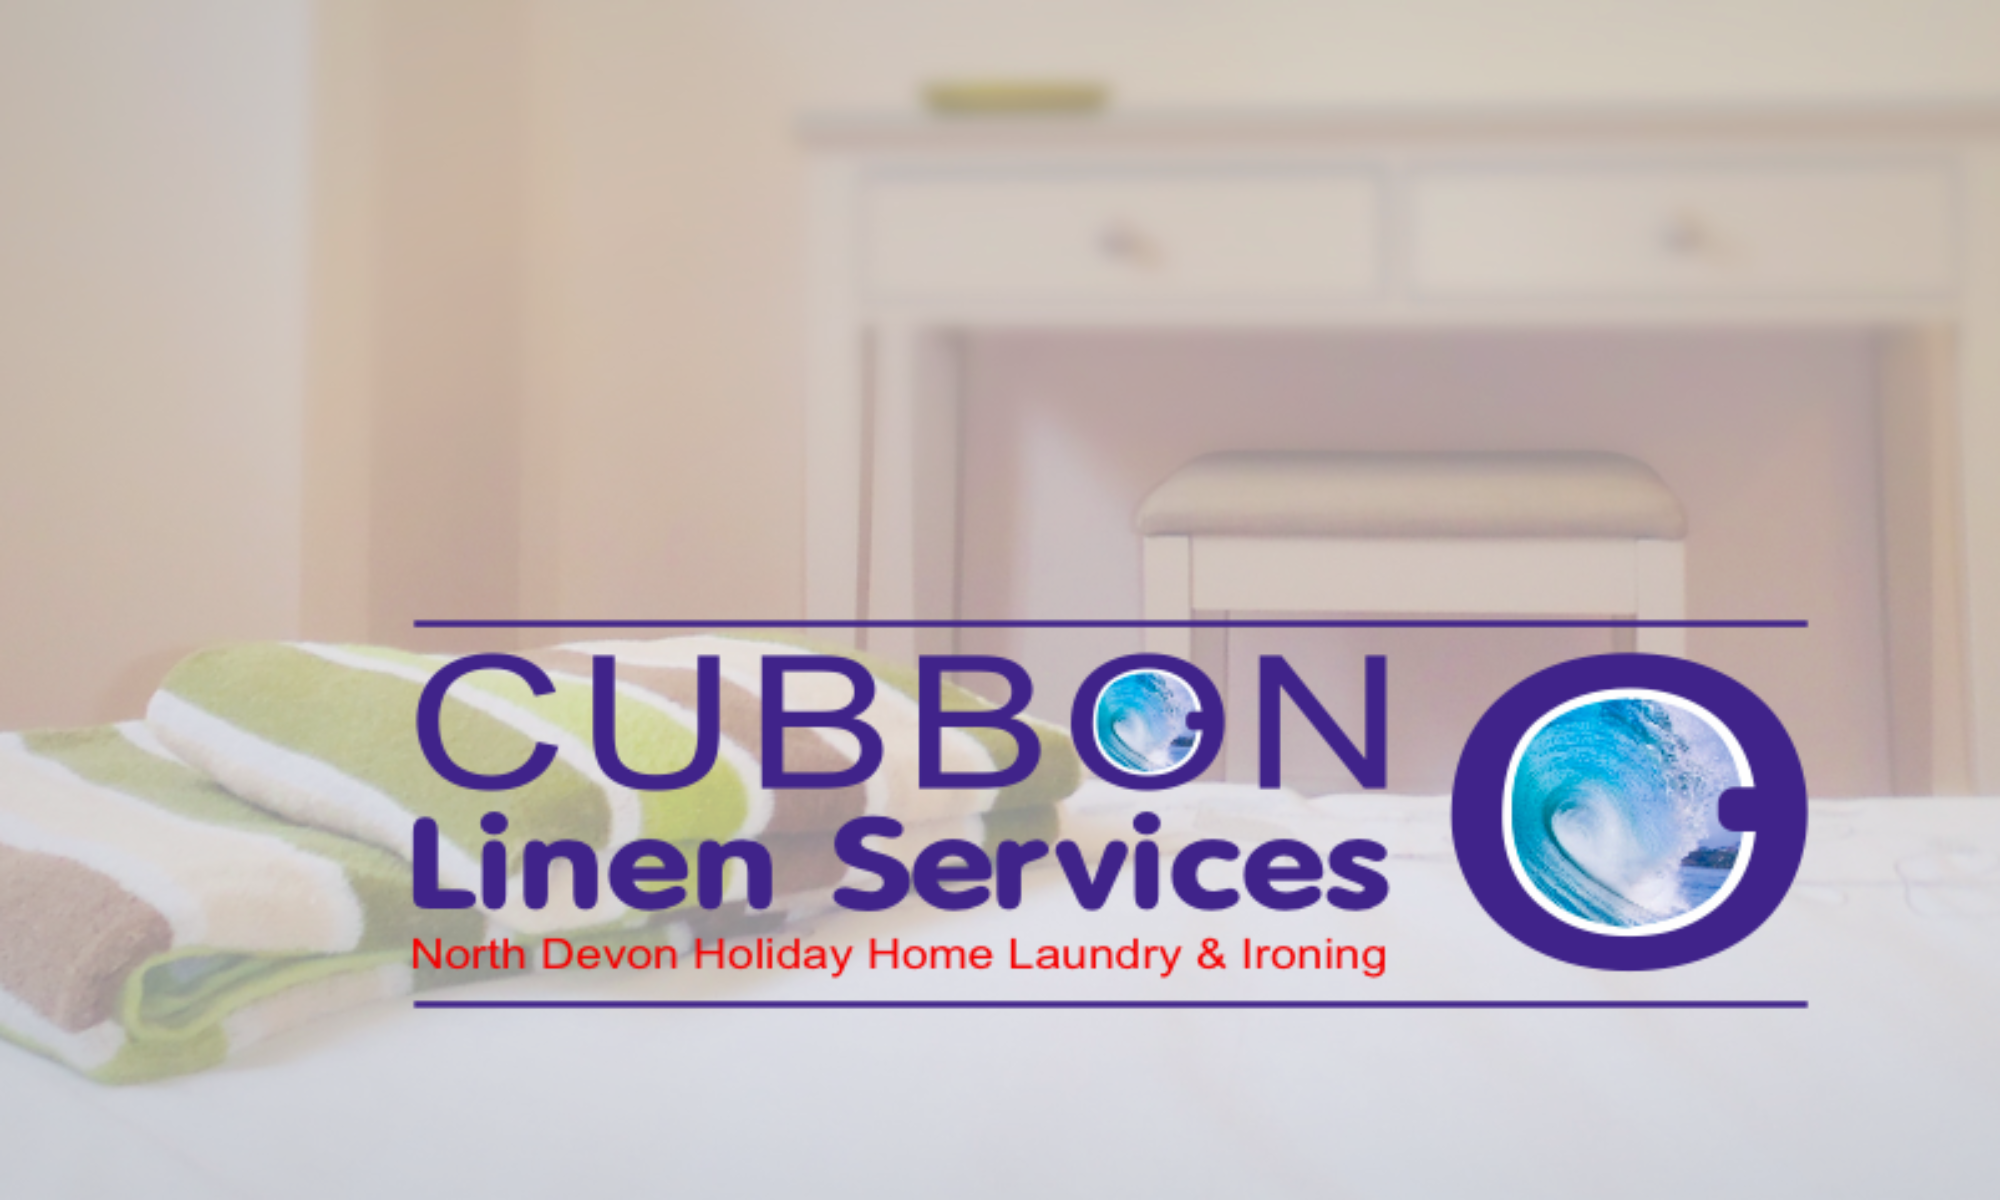 Cubbon Linen Services